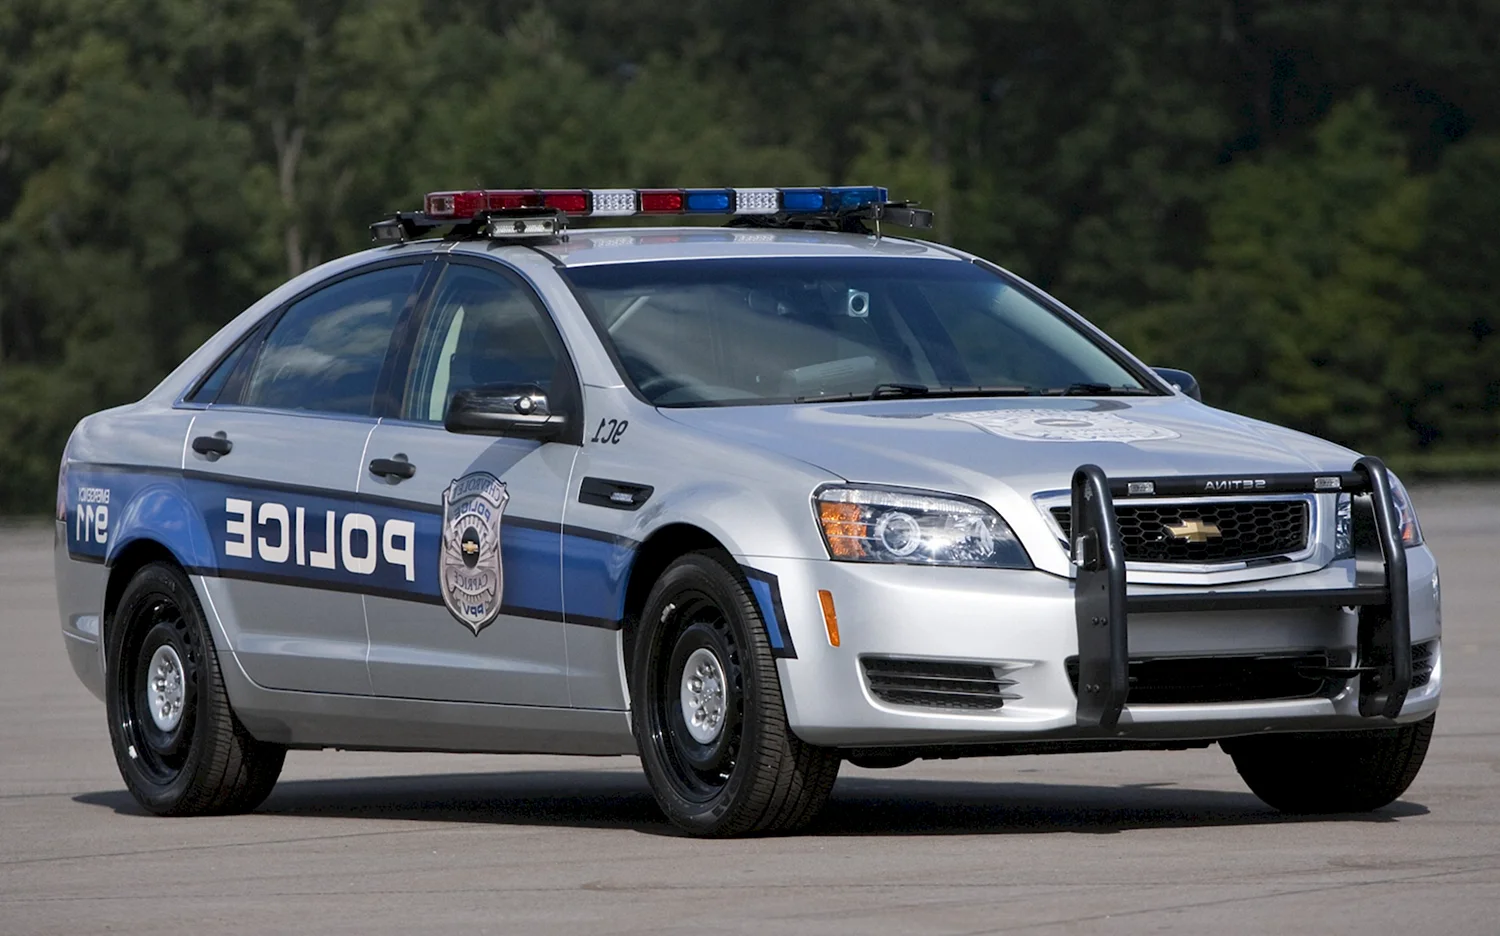 Chevrolet Caprice 2015 Police